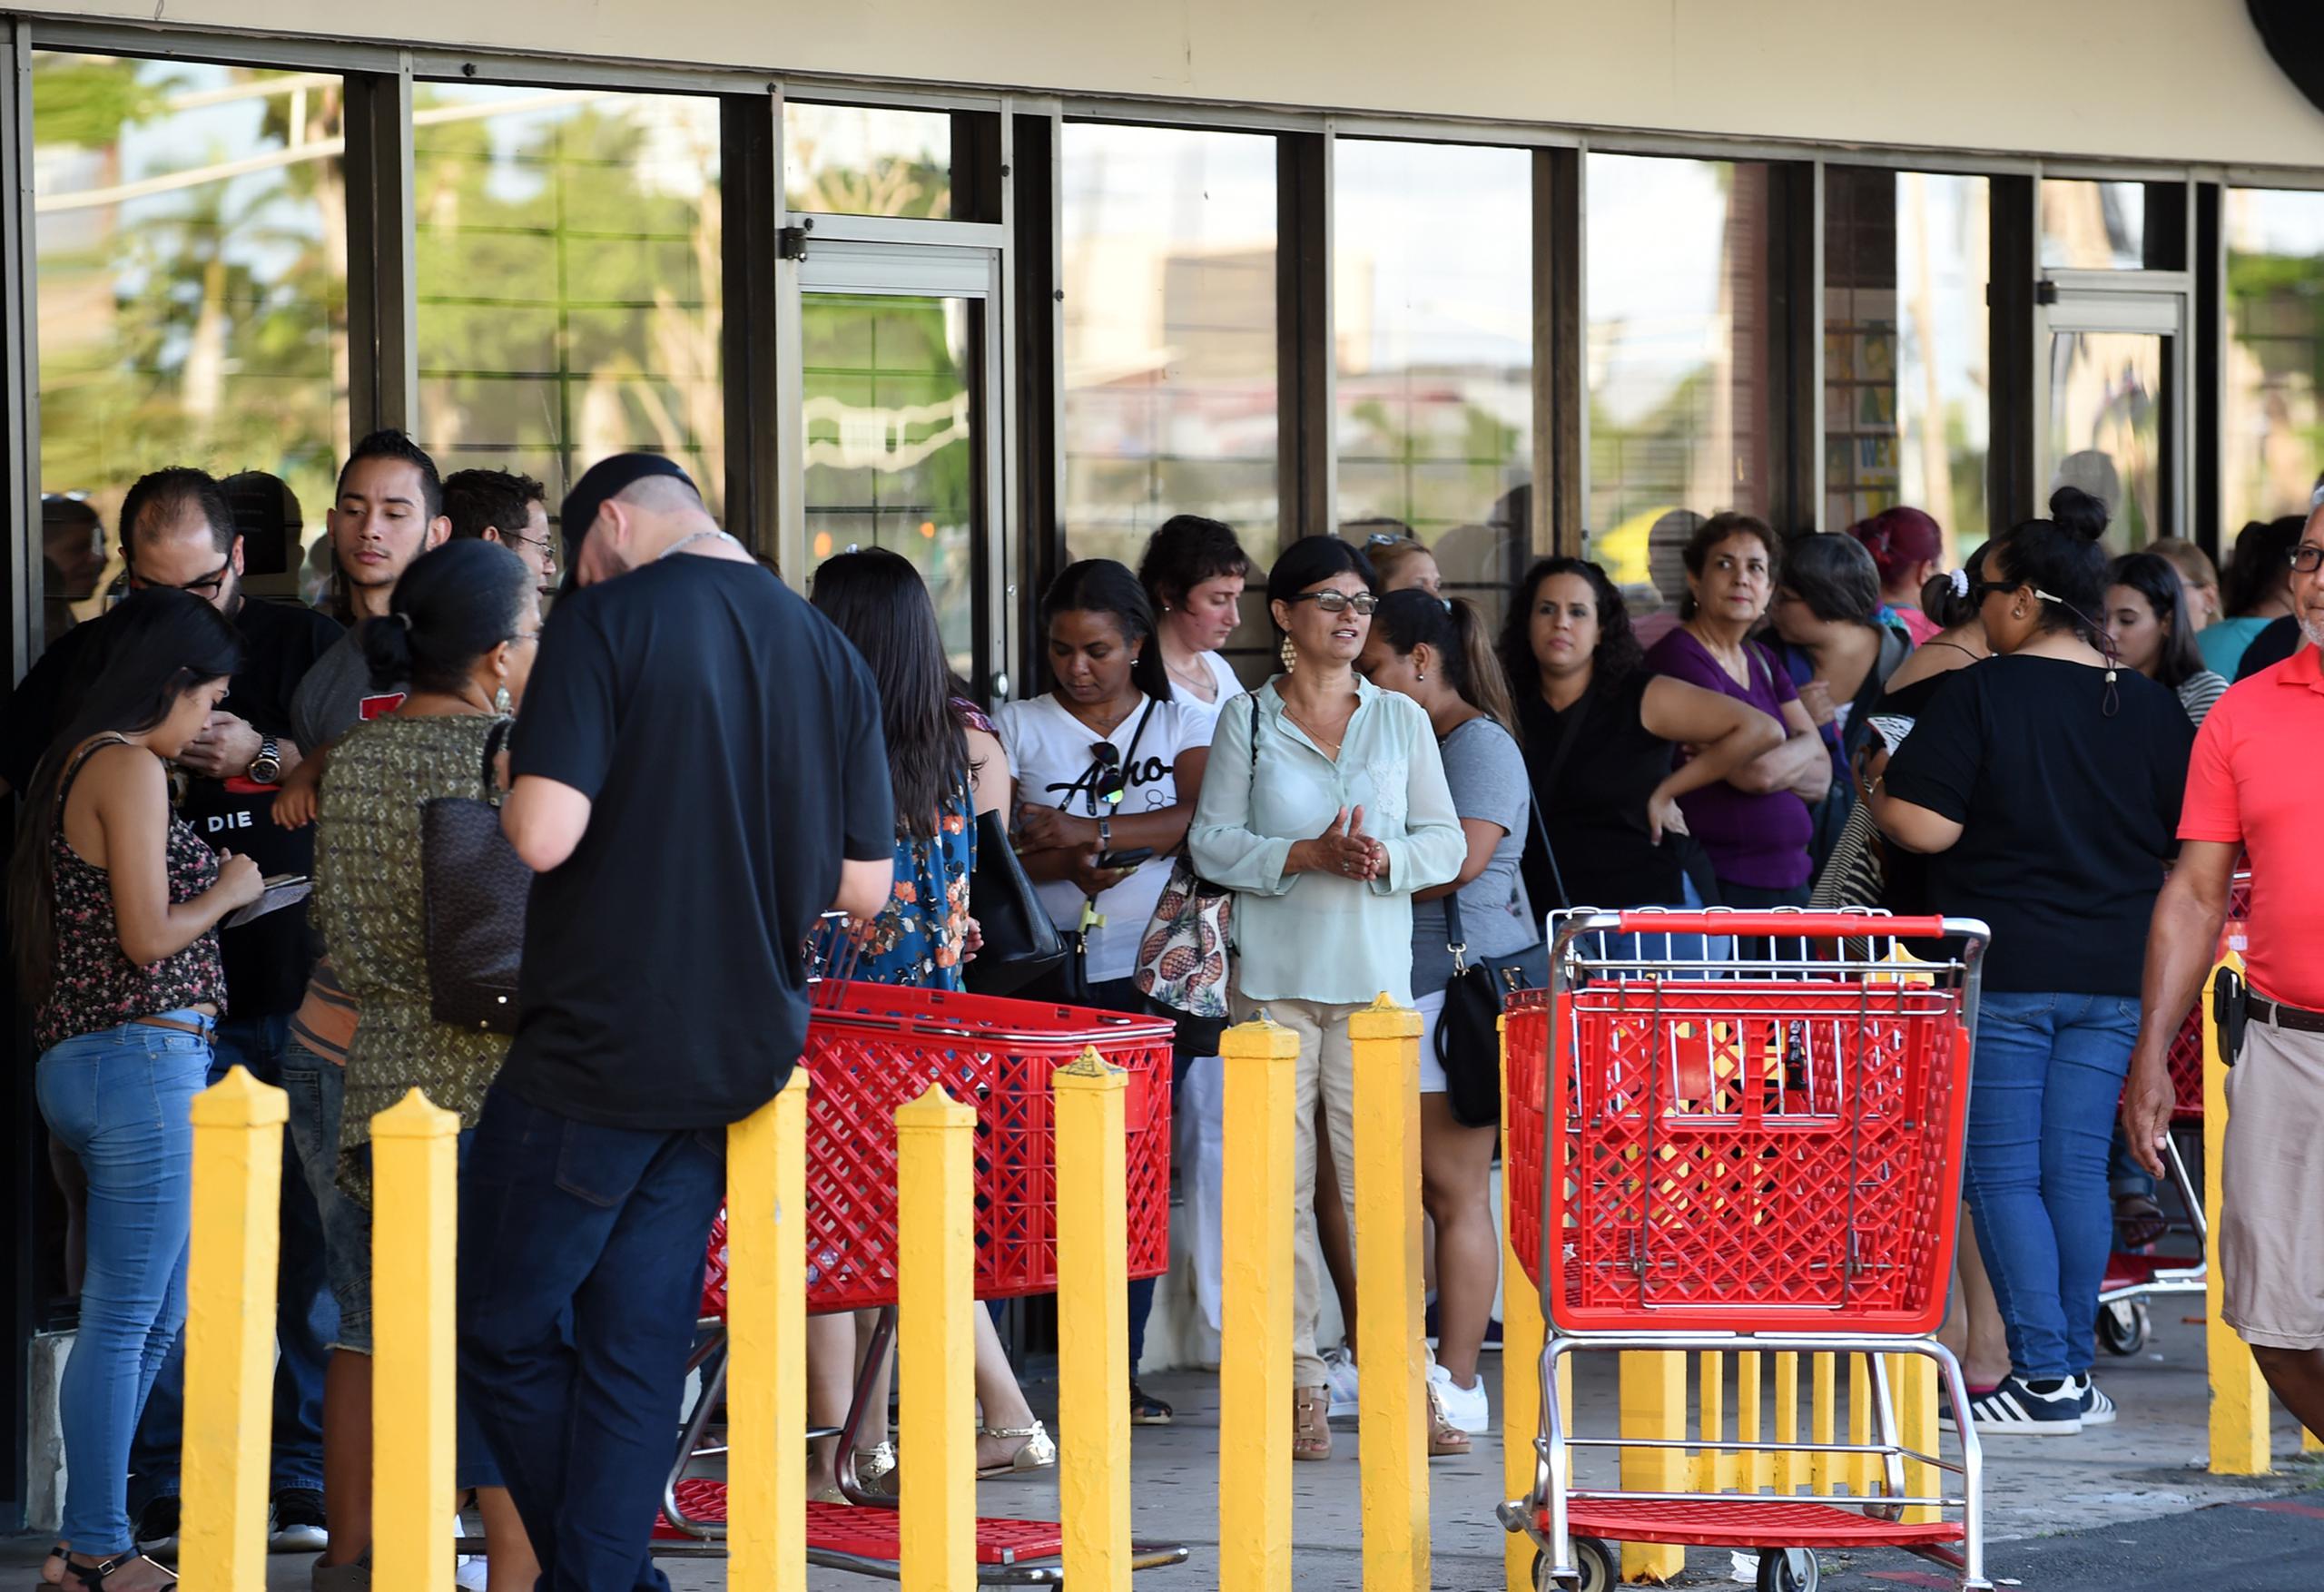 Minutos antes que dieran las 5:00 p.m. la fila llegaba al supermercado Pueblo. (andre.kang@gfrmedia.com)